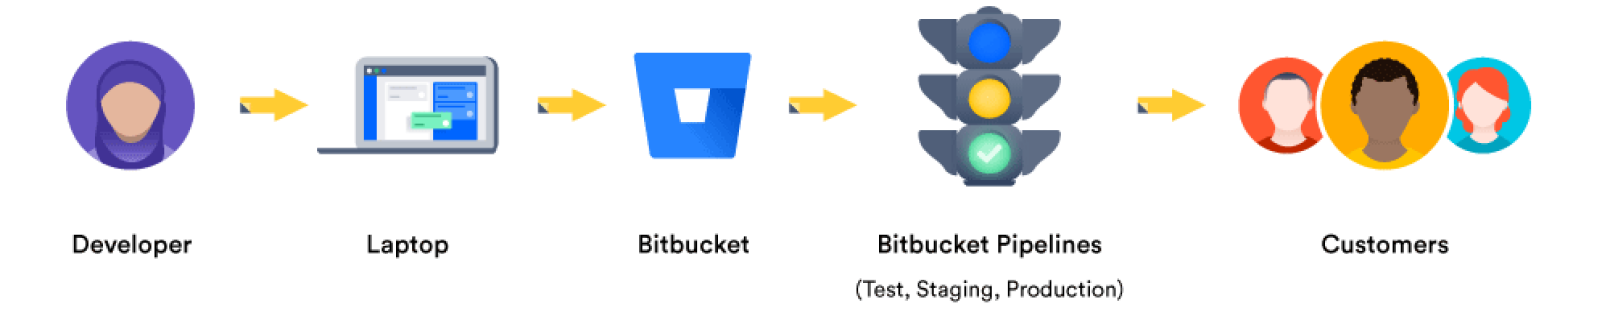 Pasos del proceso de entrega continua: desarrollador, portátil, Bitbucket, Bitbucket Pipelines y clientes